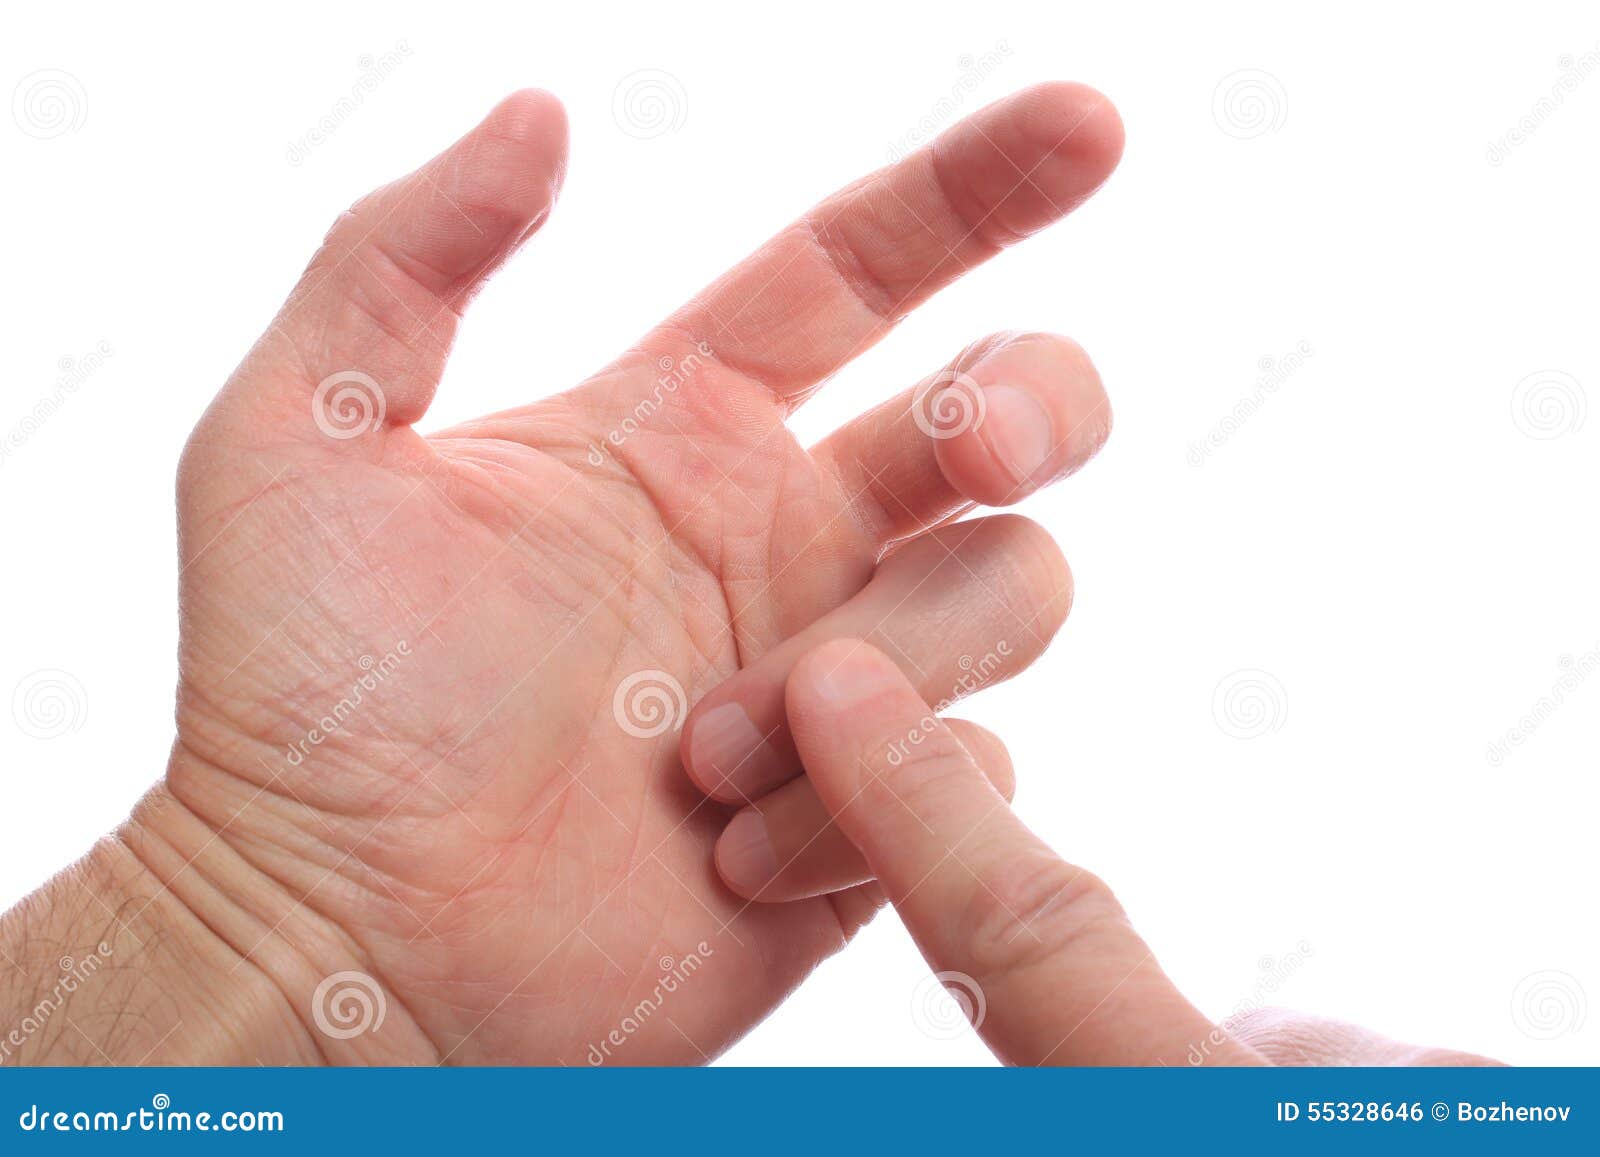 Сонник большой палец. Рука с загнутыми пальцами. Считает на пальцах.